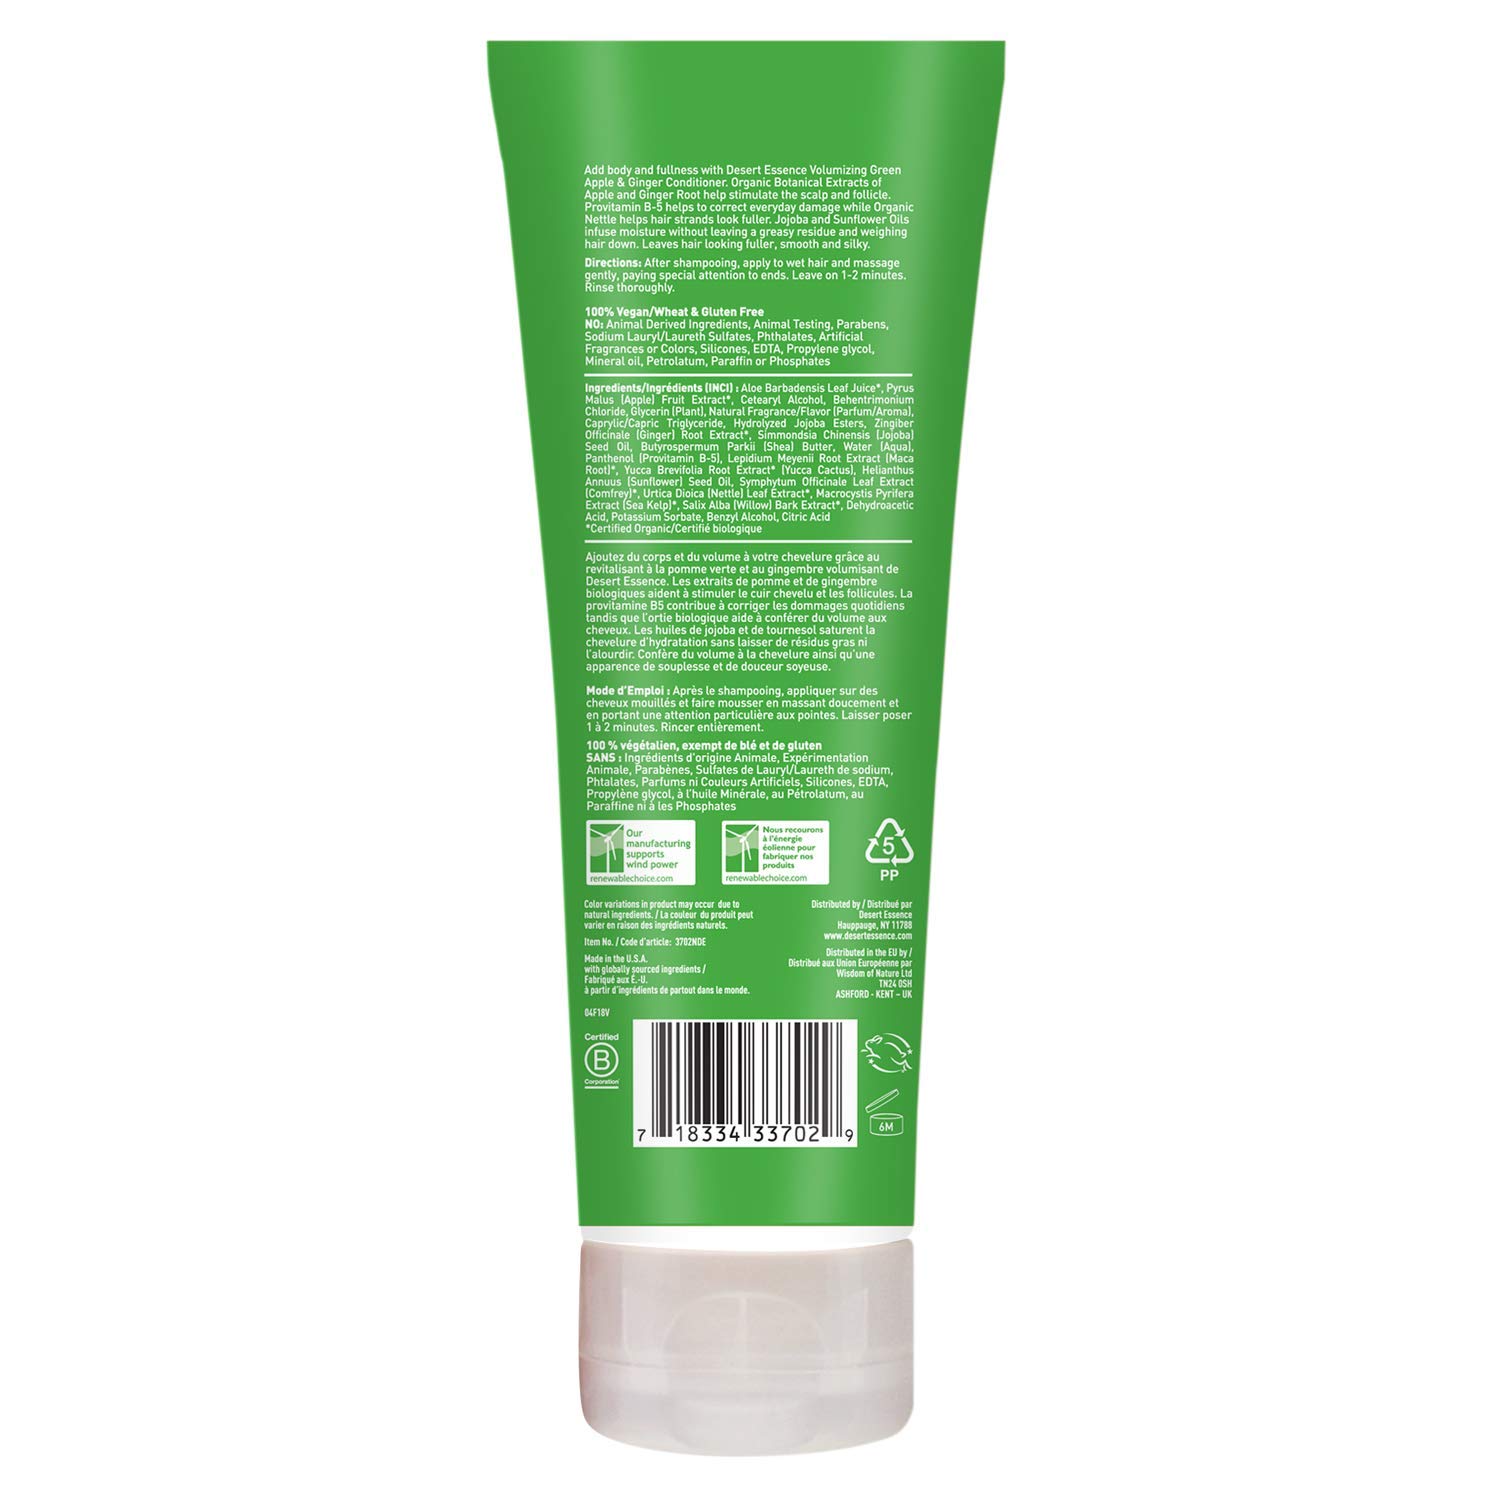 Desert Essence Green Apple and Ginger Conditioner với công thức đột phá từ thiên nhiên sẽ giúp tóc bạn mềm mượt, sáng bóng và dễ chải. Đặc biệt, sản phẩm được làm từ các thành phần tự nhiên, không gây hại cho da đầu và tóc của bạn.